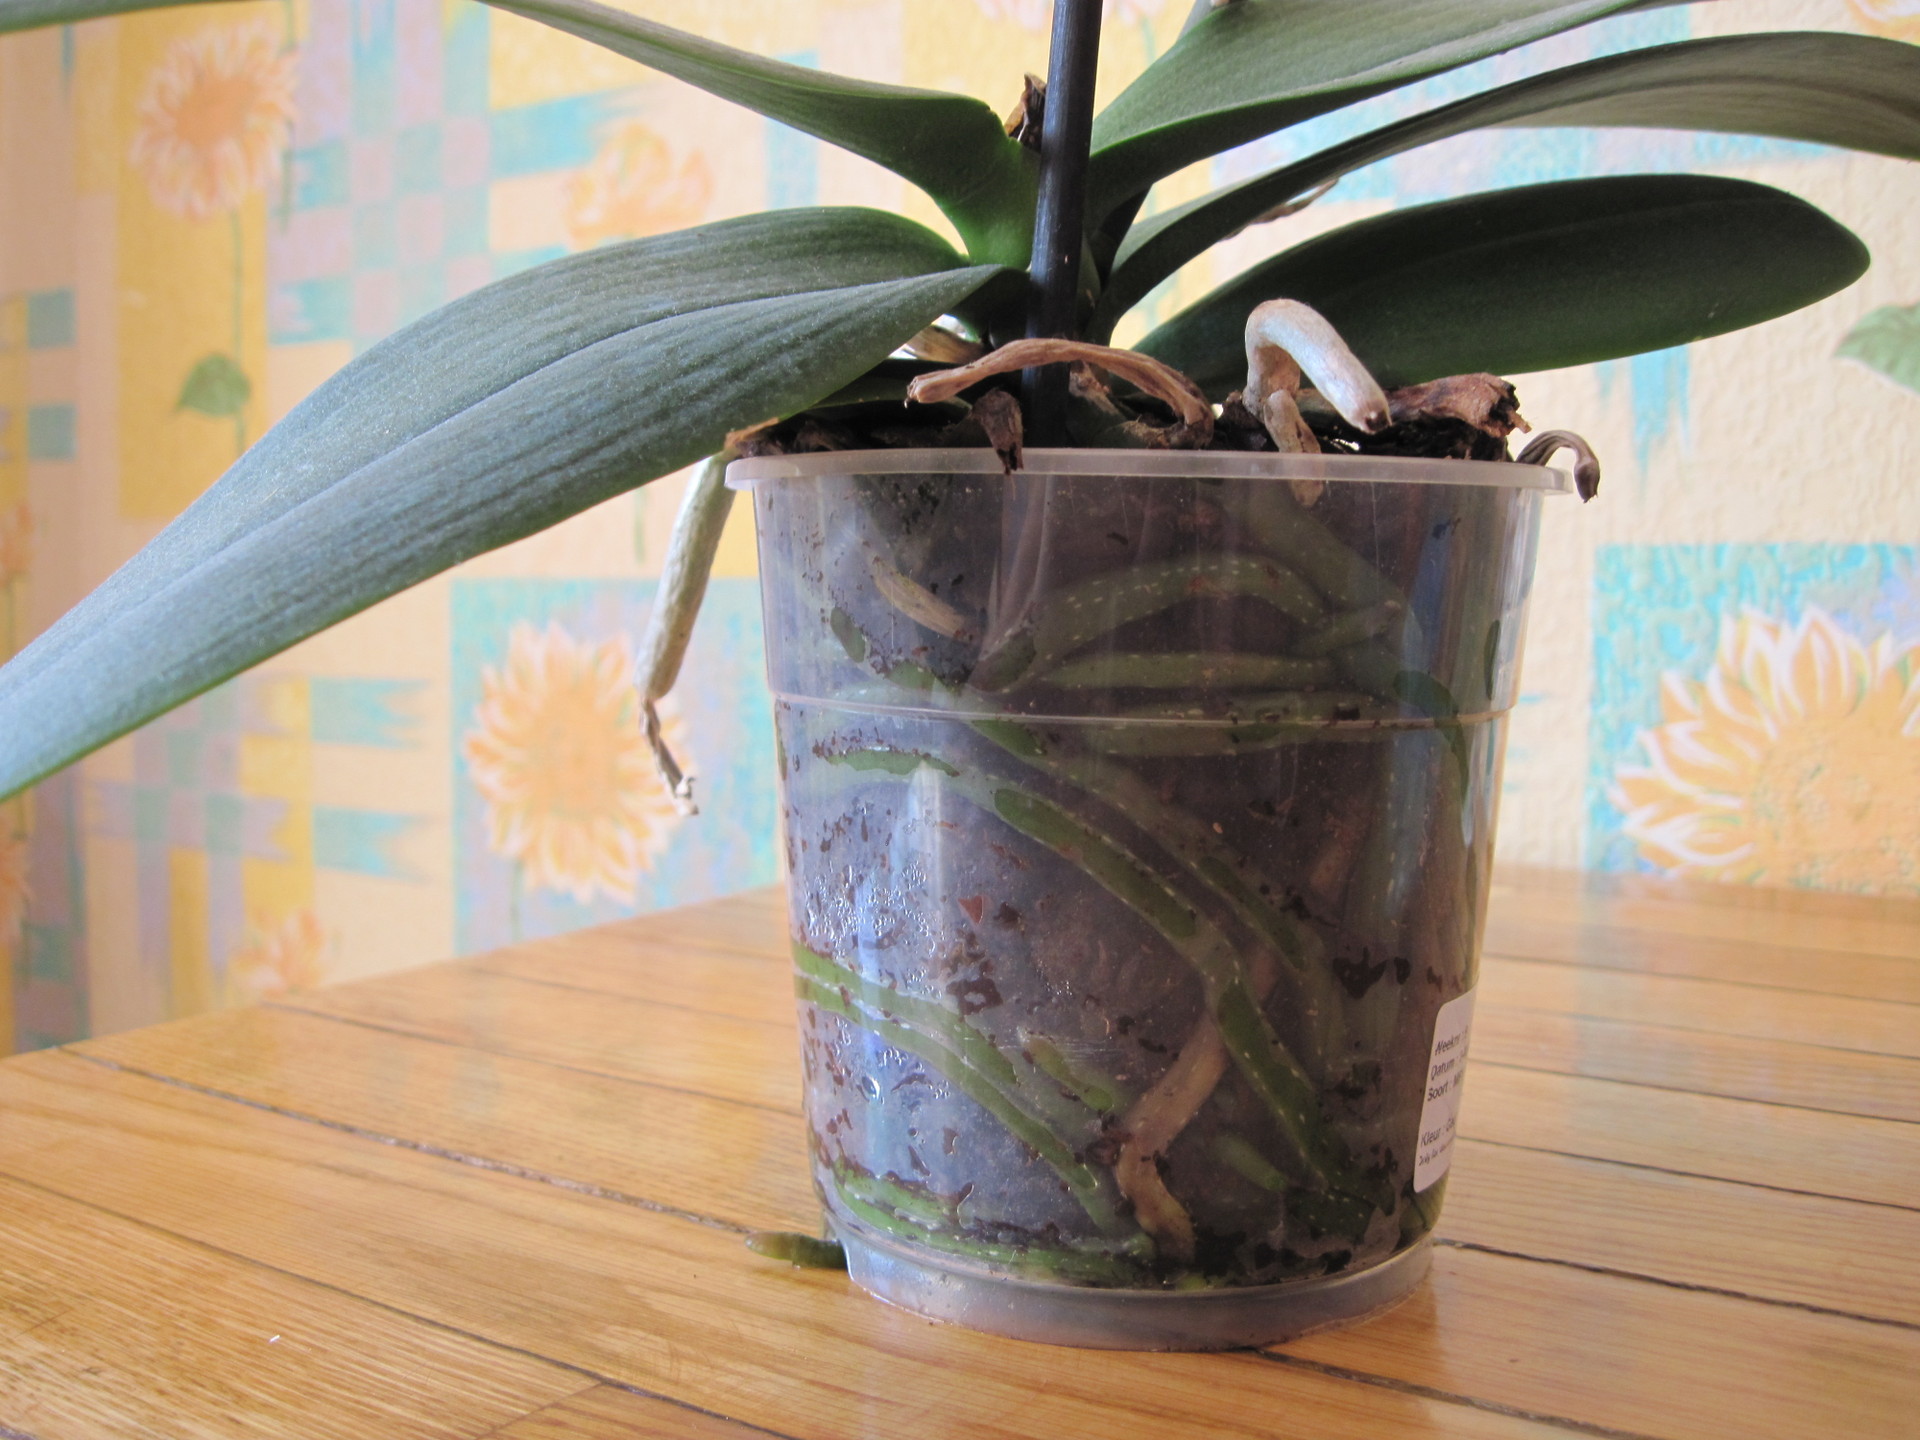 Как правильно обрезать орхидею после цветения в домашних условиях фото пошаговое